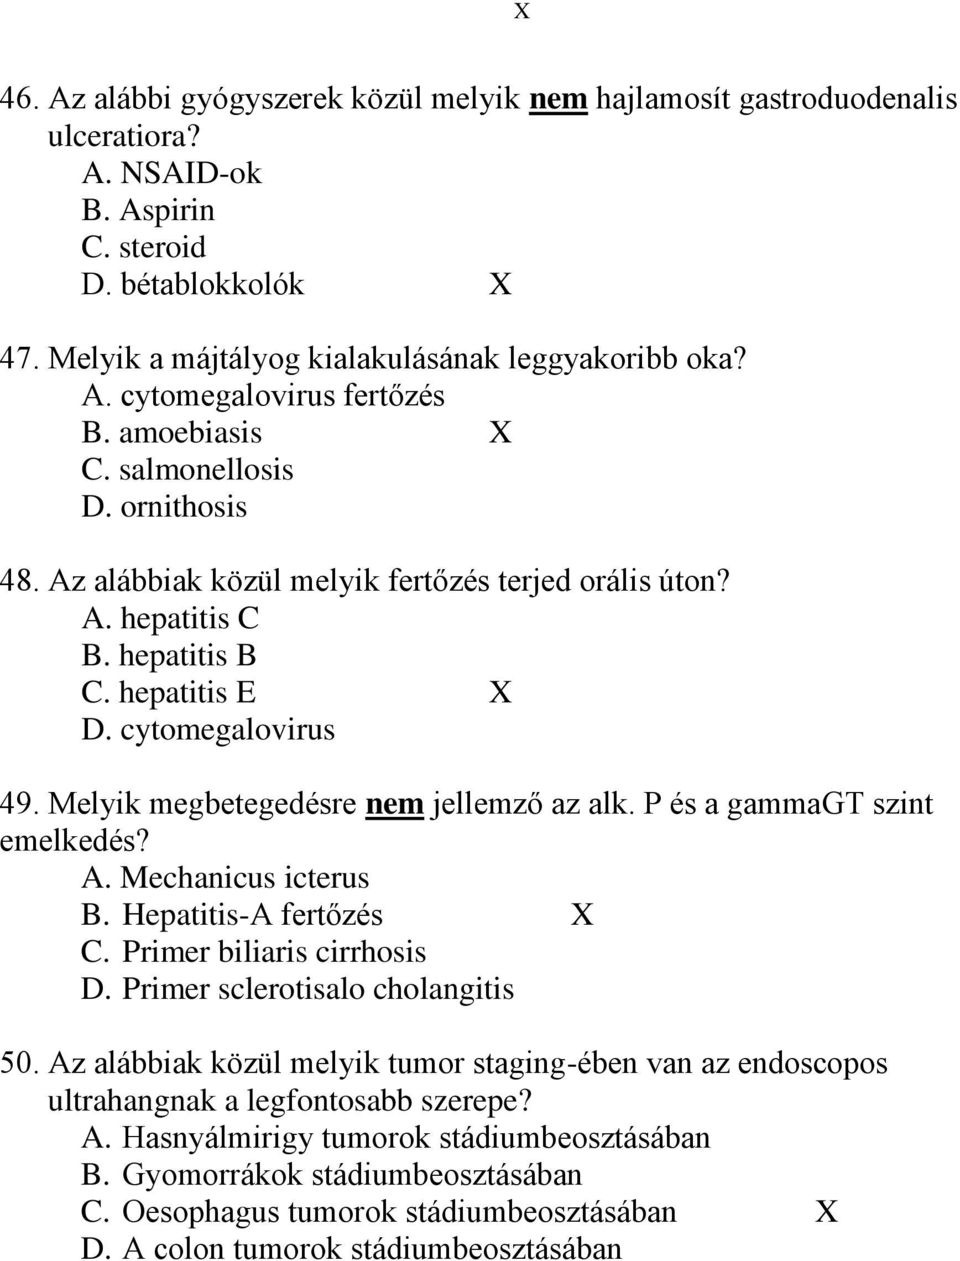 Melyik megbetegedésre nem jellemző az alk. P és a gammagt szint emelkedés? A. Mechanicus icterus B. Hepatitis-A fertőzés X C. Primer biliaris cirrhosis D. Primer sclerotisalo cholangitis 50.